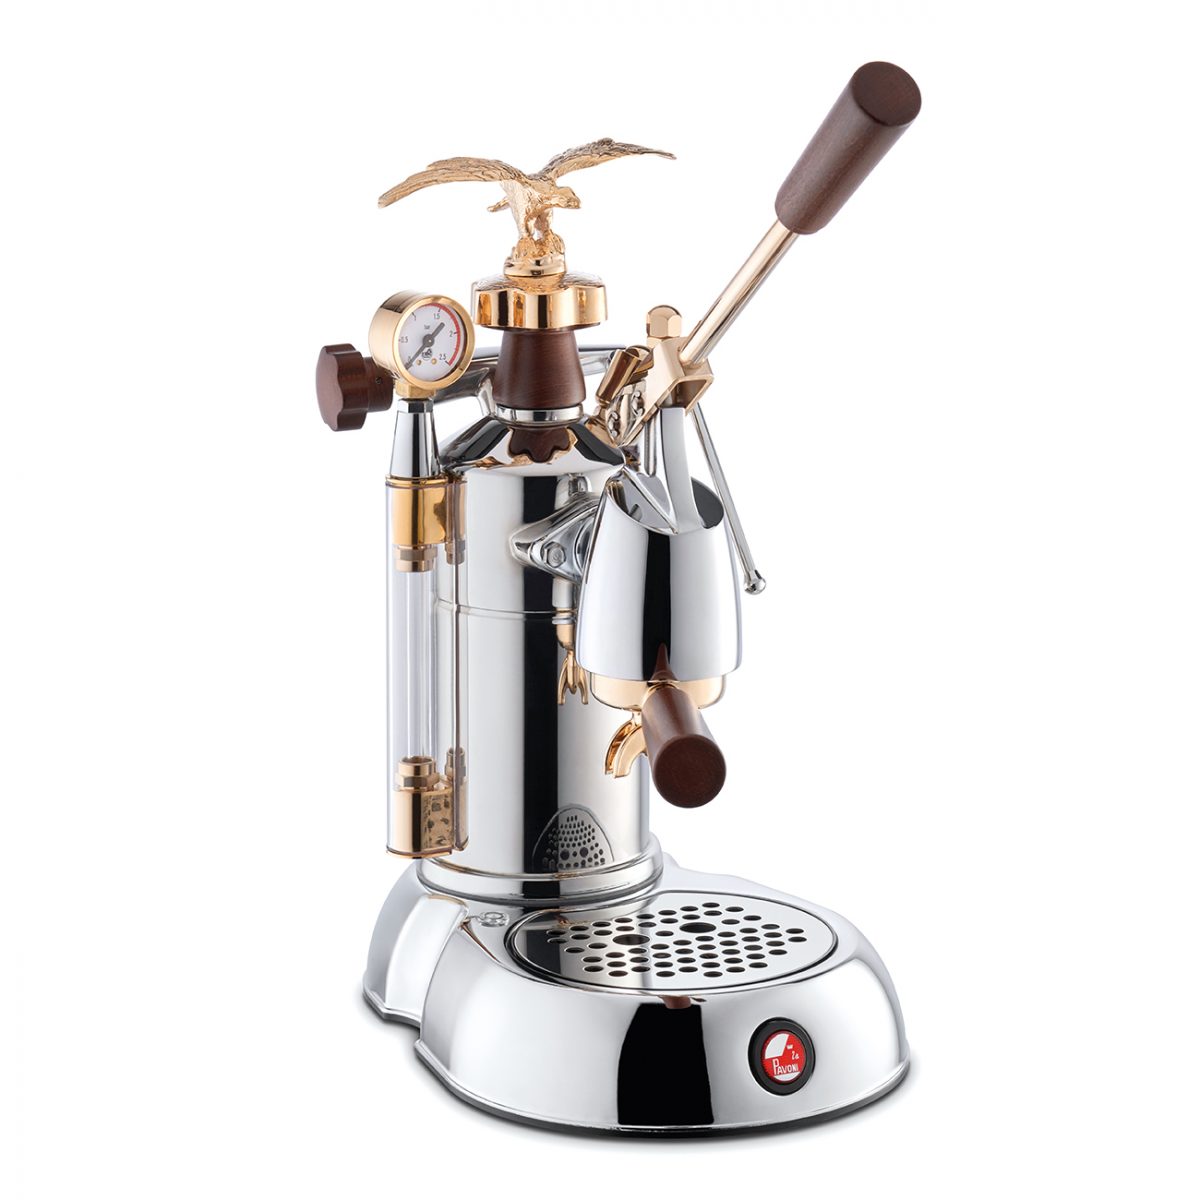 La Pavoni Machine à Café Espresso Expo 2015